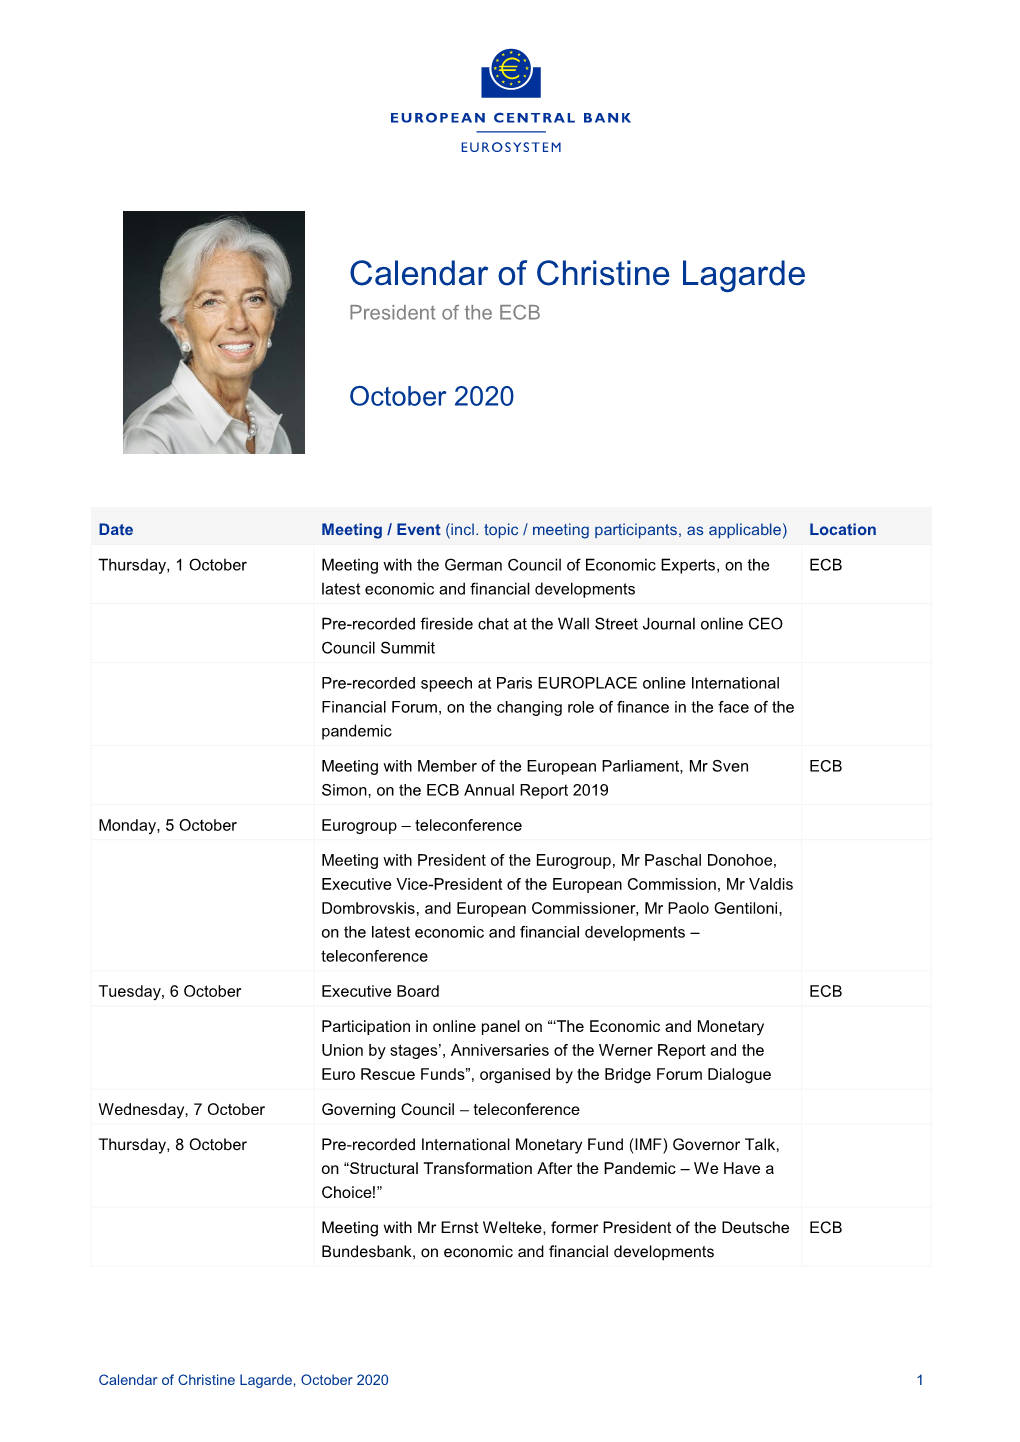 Calendar of Christine Lagarde, October 2020 1 Tuesday, 13 October Executive Board ECB